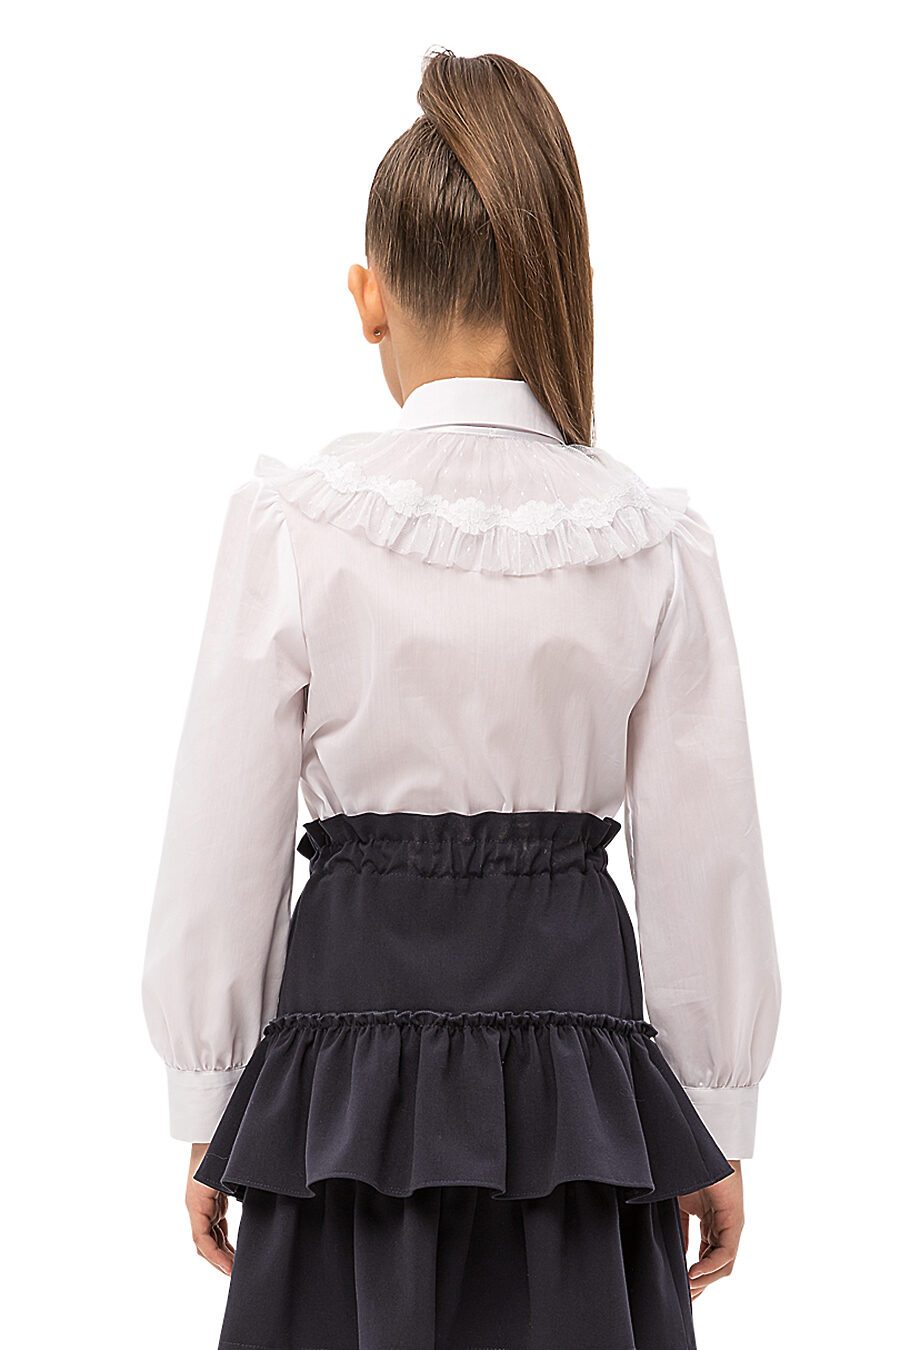 Блуза КАРАМЕЛЛИ (683333), купить в Moyo.moda